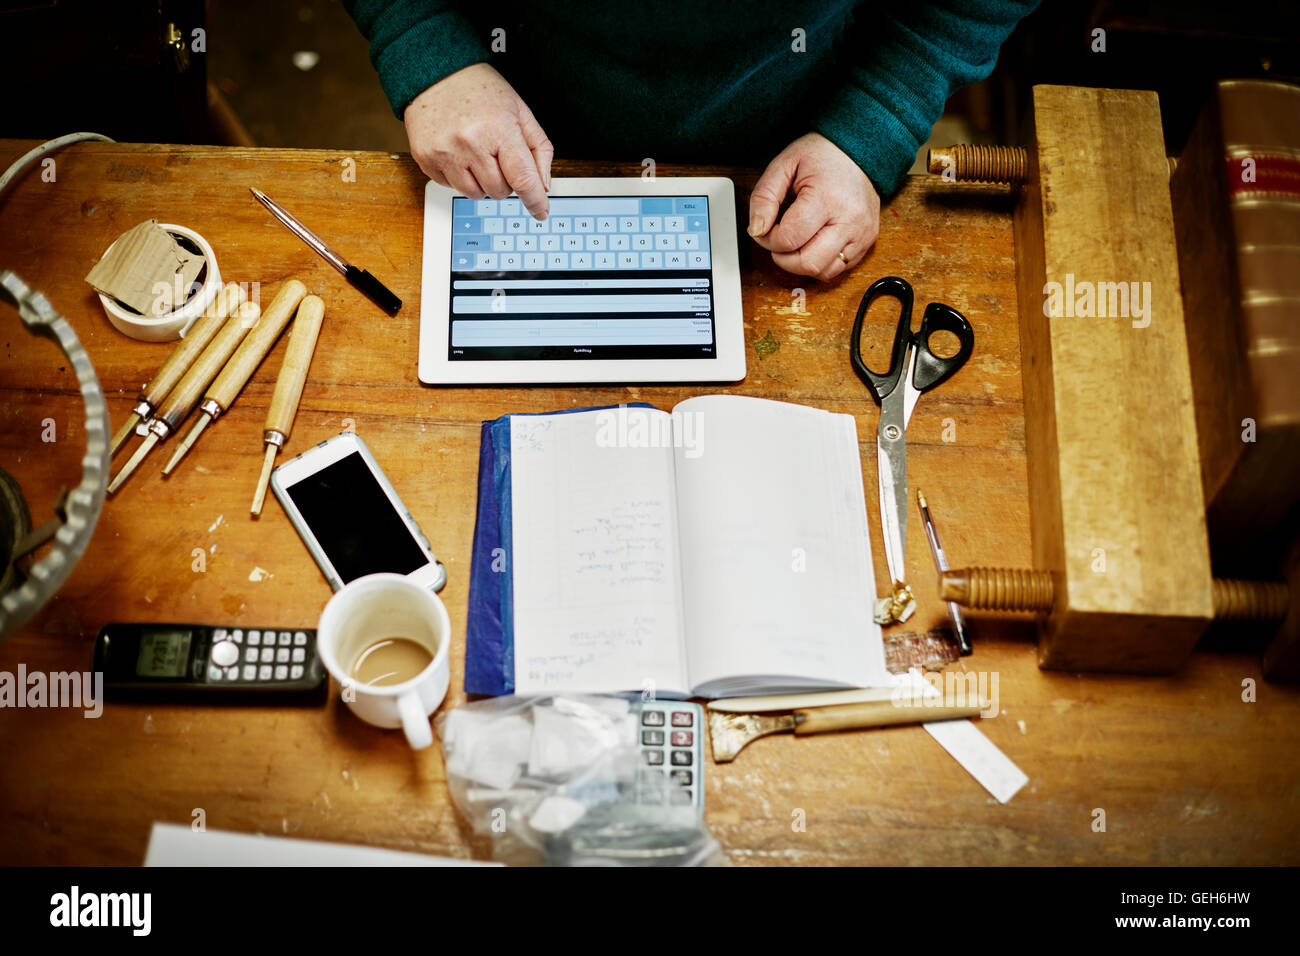 Una persona seduta su un banco da lavoro, utilizzando una tavoletta digitale. Gli strumenti forbici e uno smart phone sul banco. Foto Stock